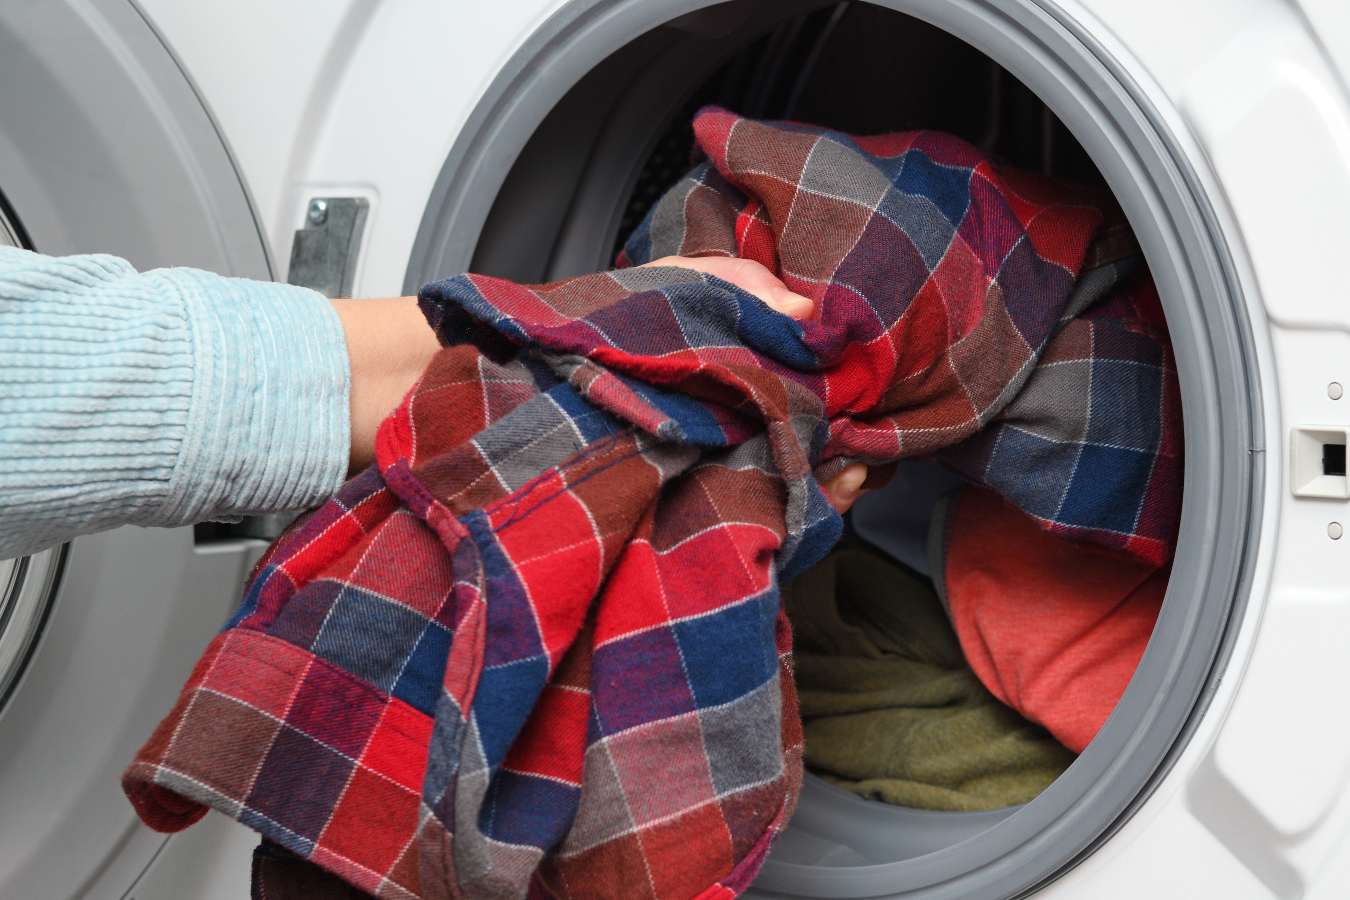 Ocet do prania – jak go użyć? Już niewielka ilość może przynieść zaskakujące rezultaty